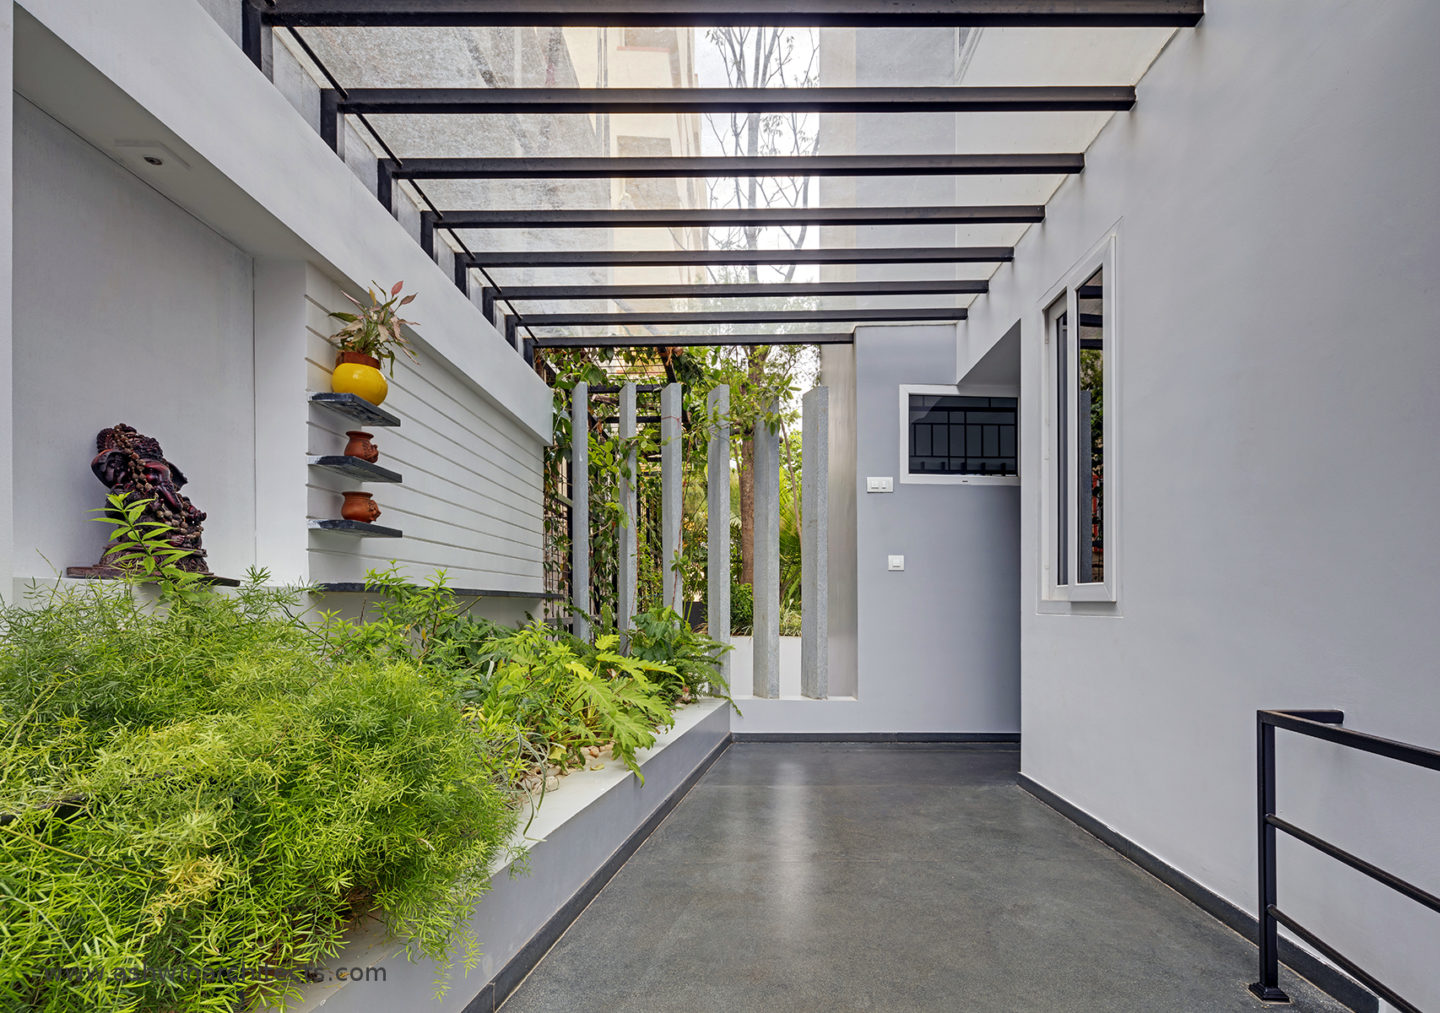 slokesh-60x40-plot-residence-landscape-garden-design